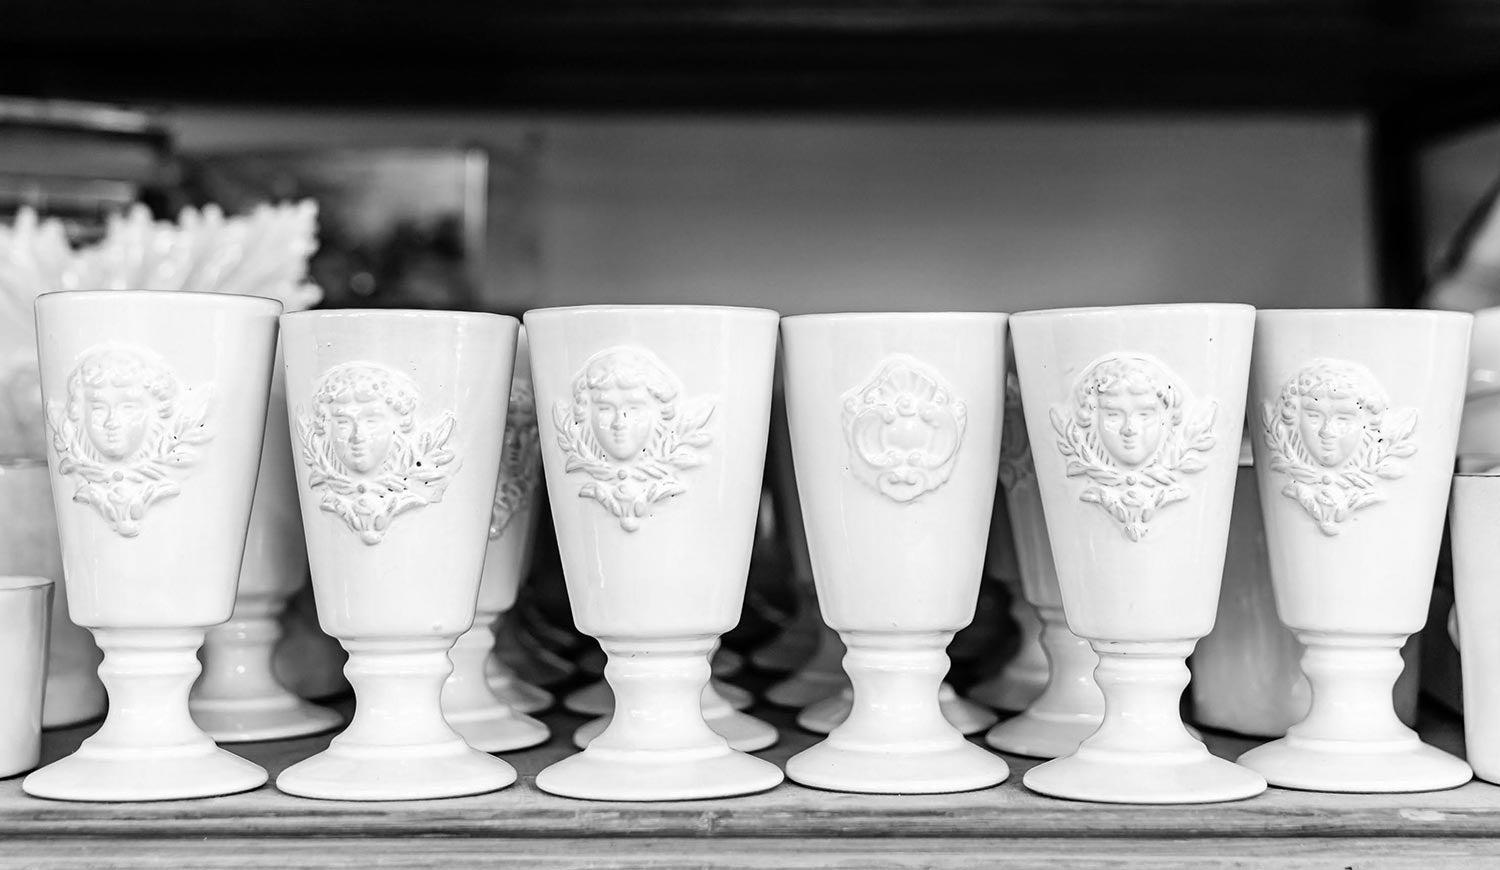 Ceramic Vases handmade by Mathilde Carron-Astier de Villatte